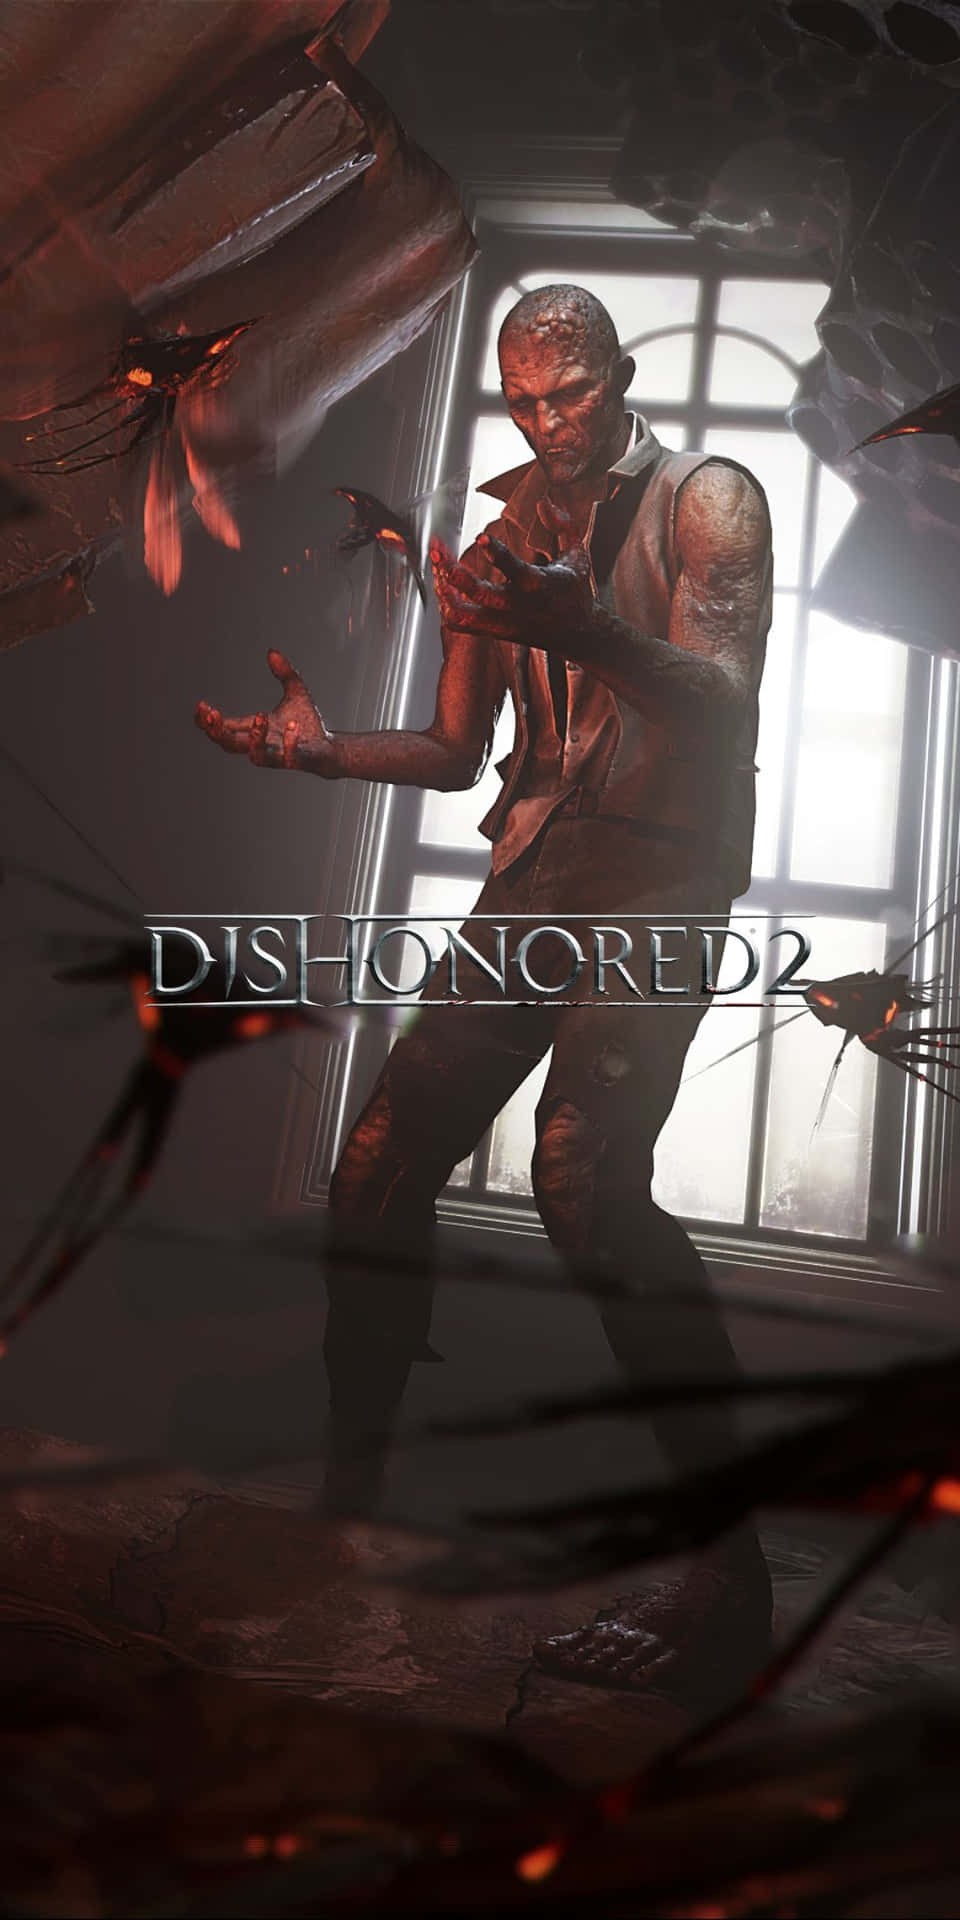 Pixel3 Y Dishonored 2 - Una Combinación Perfecta.